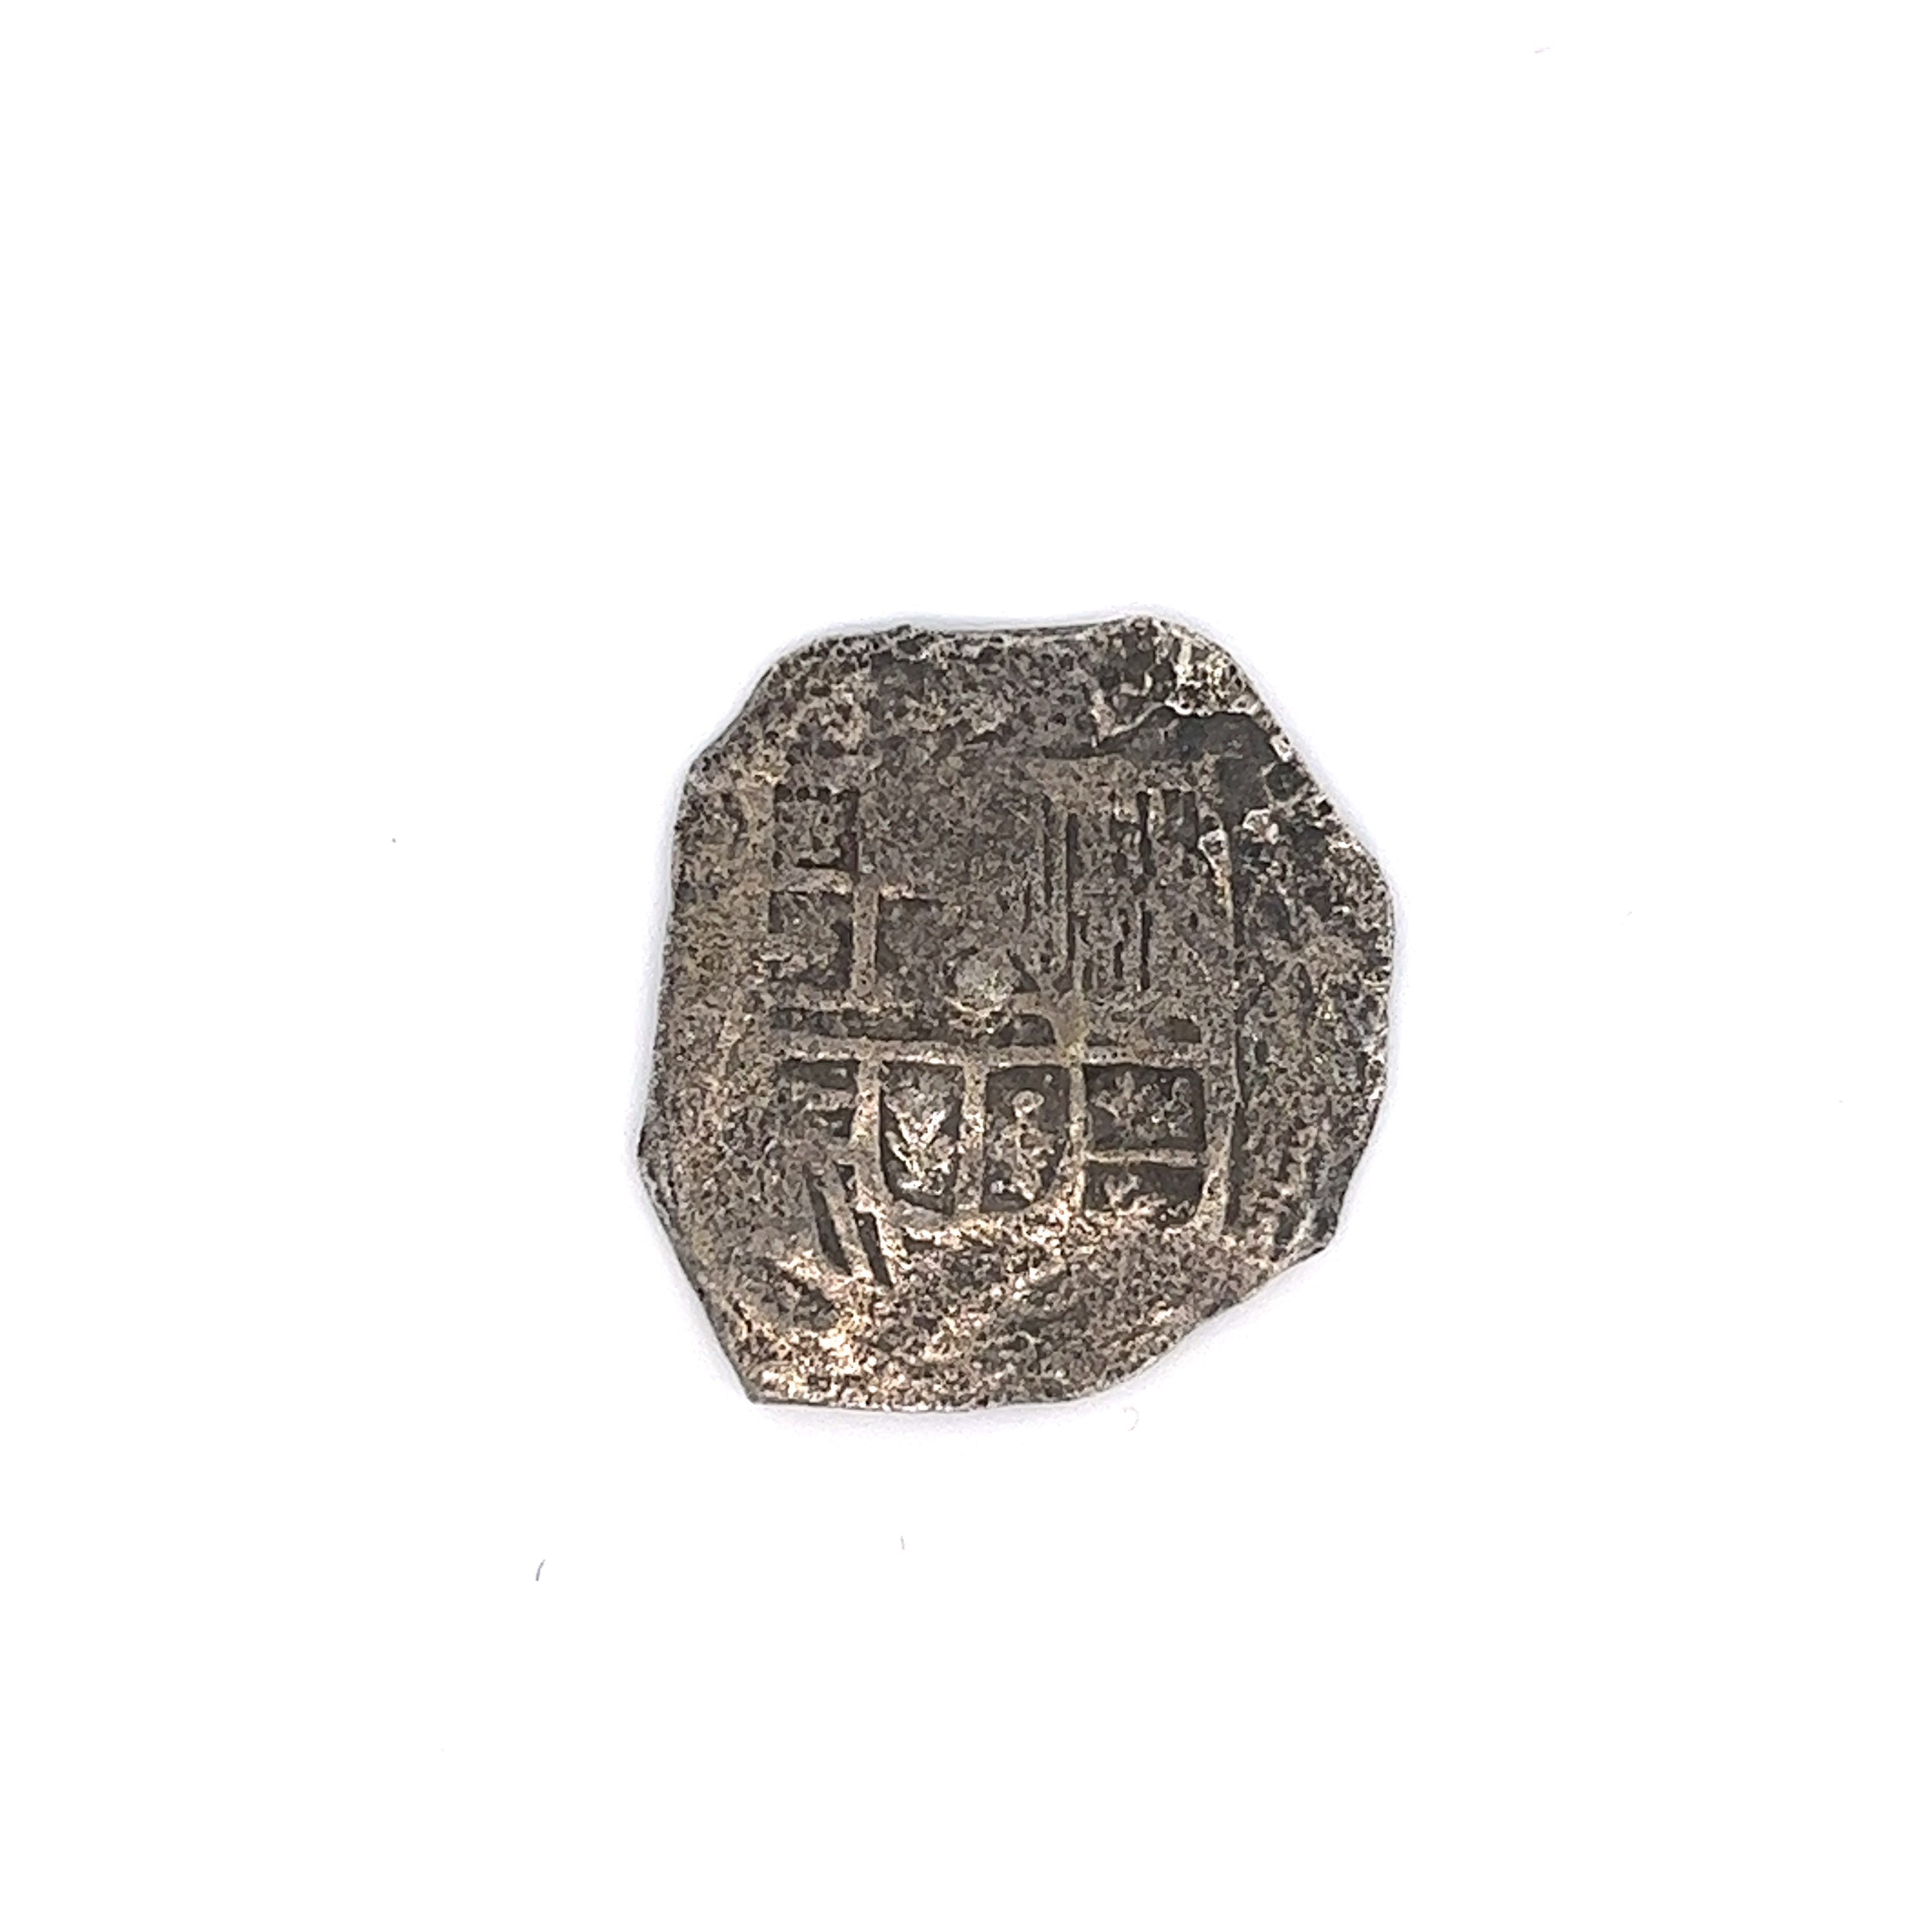 Atocha Shipwreck 4 Reale Grade 2 Mexico Mint Coin-Coins-ASSAY